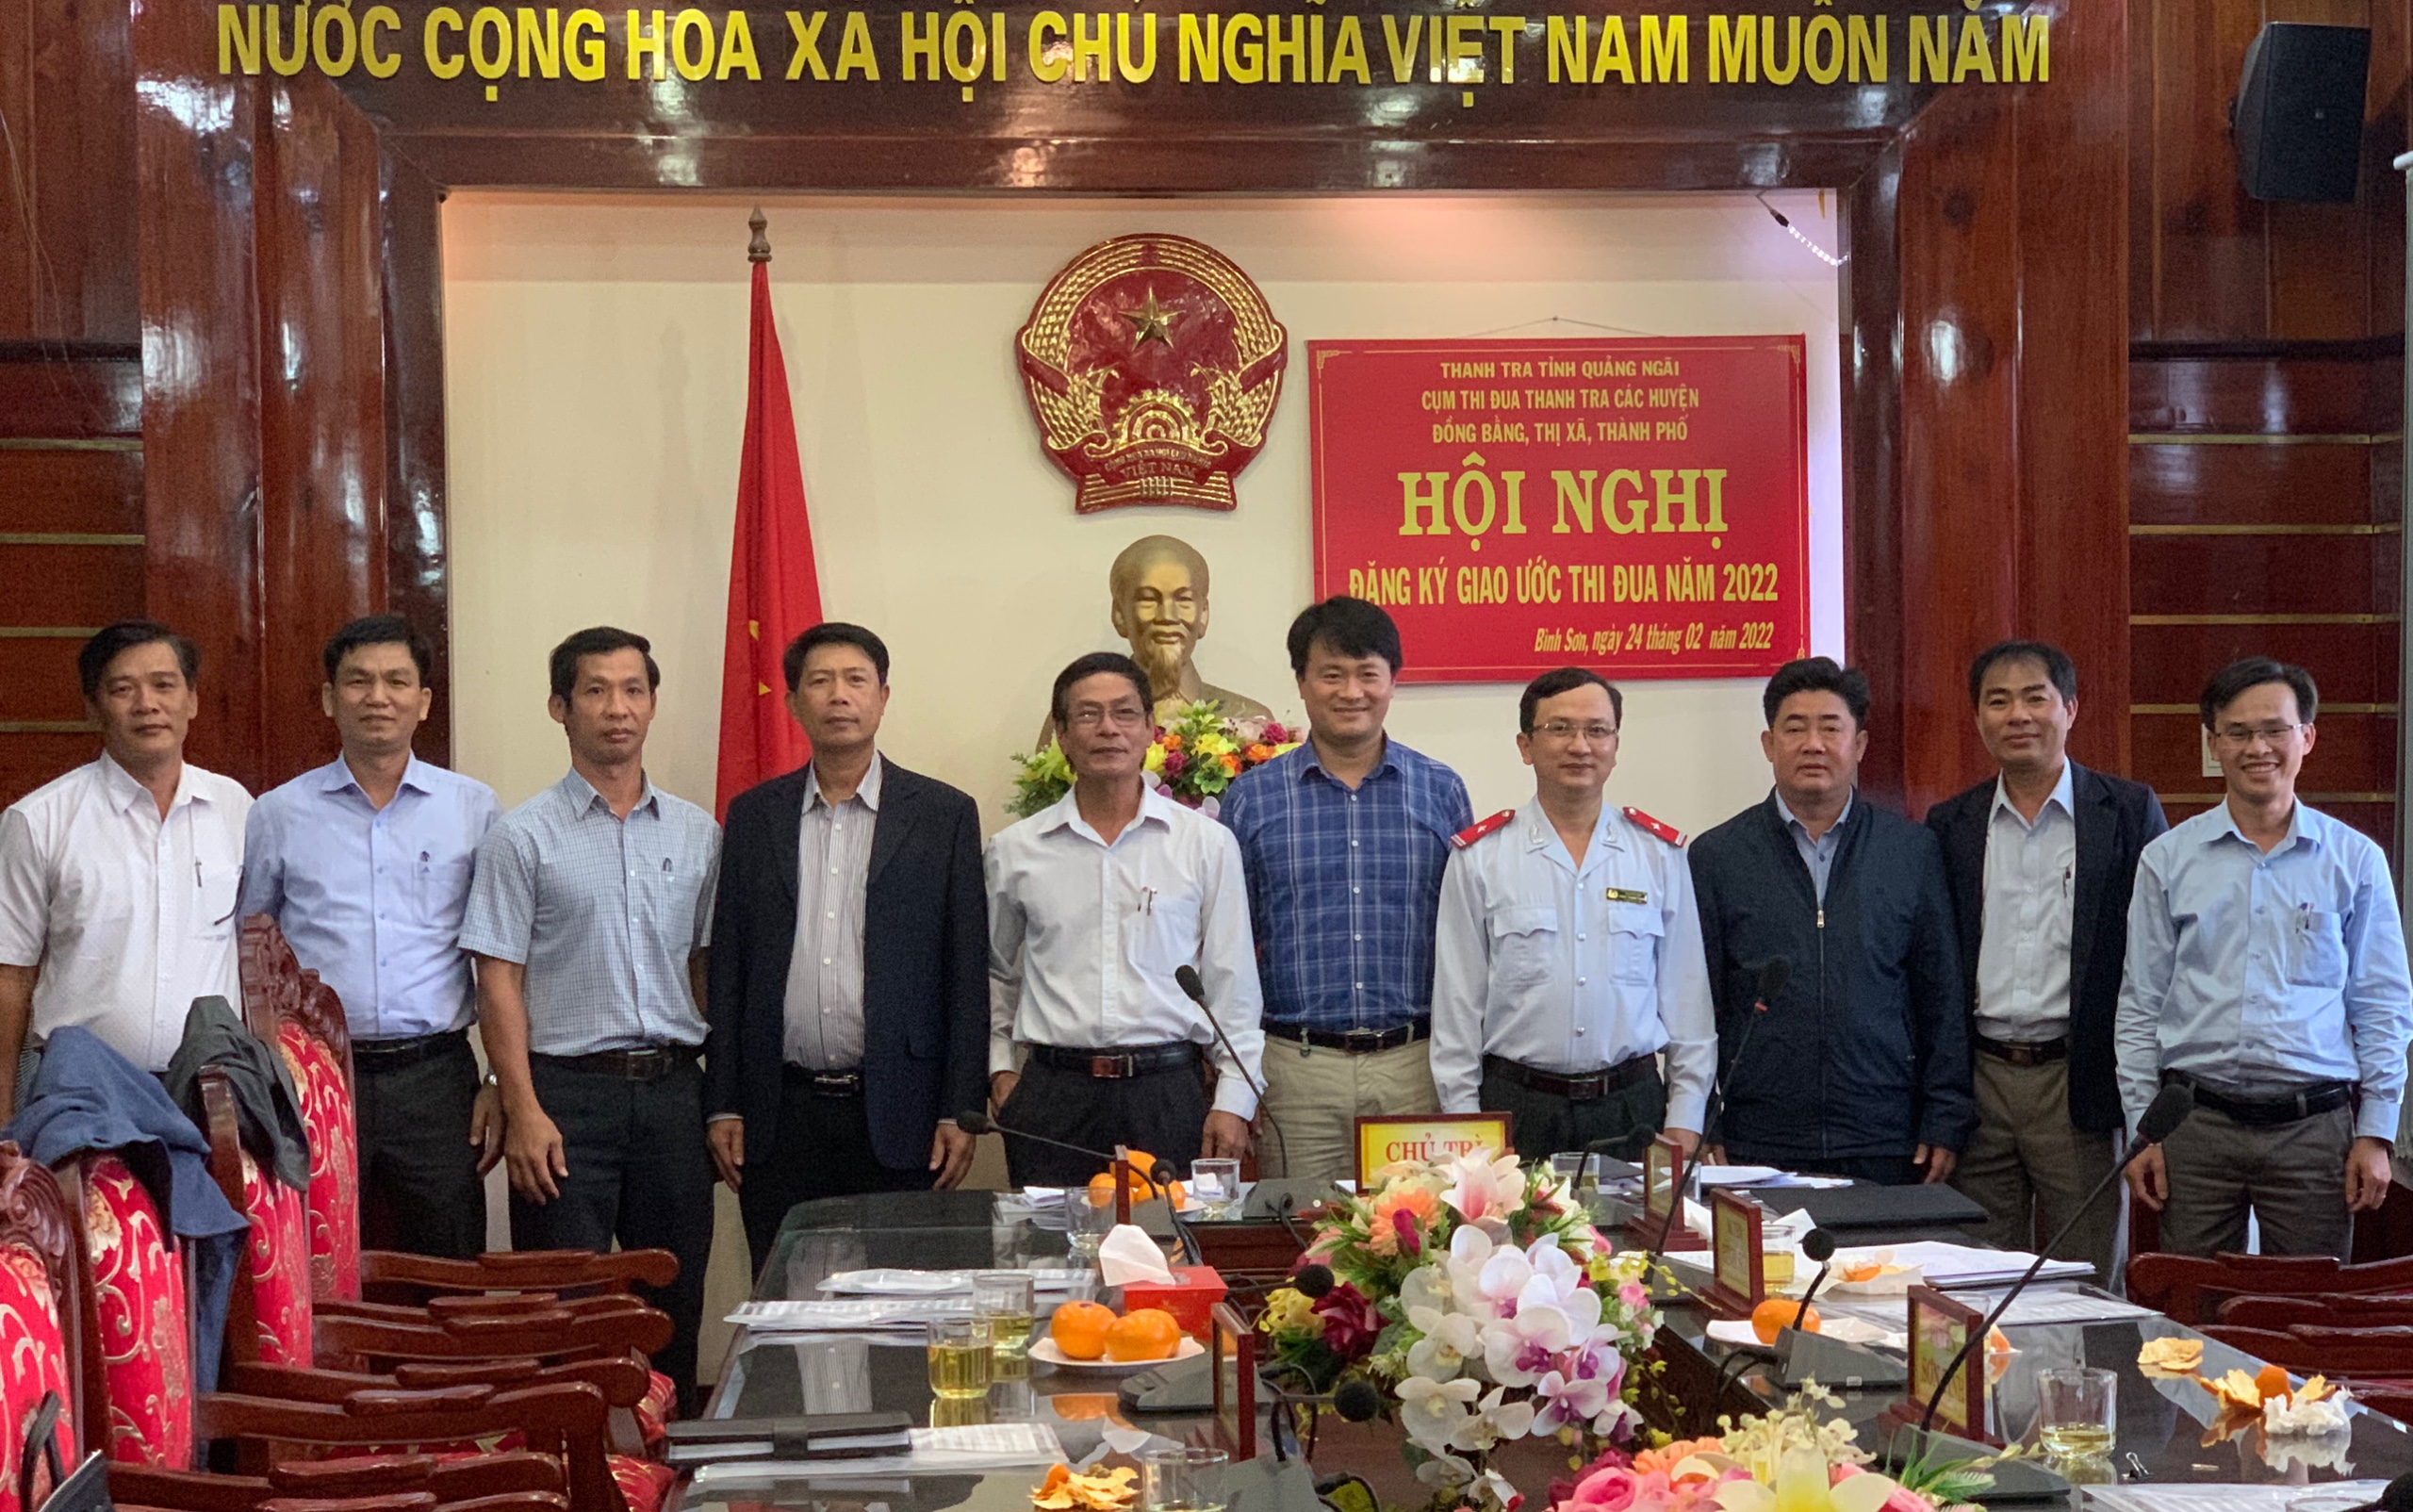 Cụm thi đua Thanh tra các huyện đồng bằng, thị xã, thành phố trong tỉnh Quảng Ngãi tổ chức ký kết giao ước thi đua năm 2022